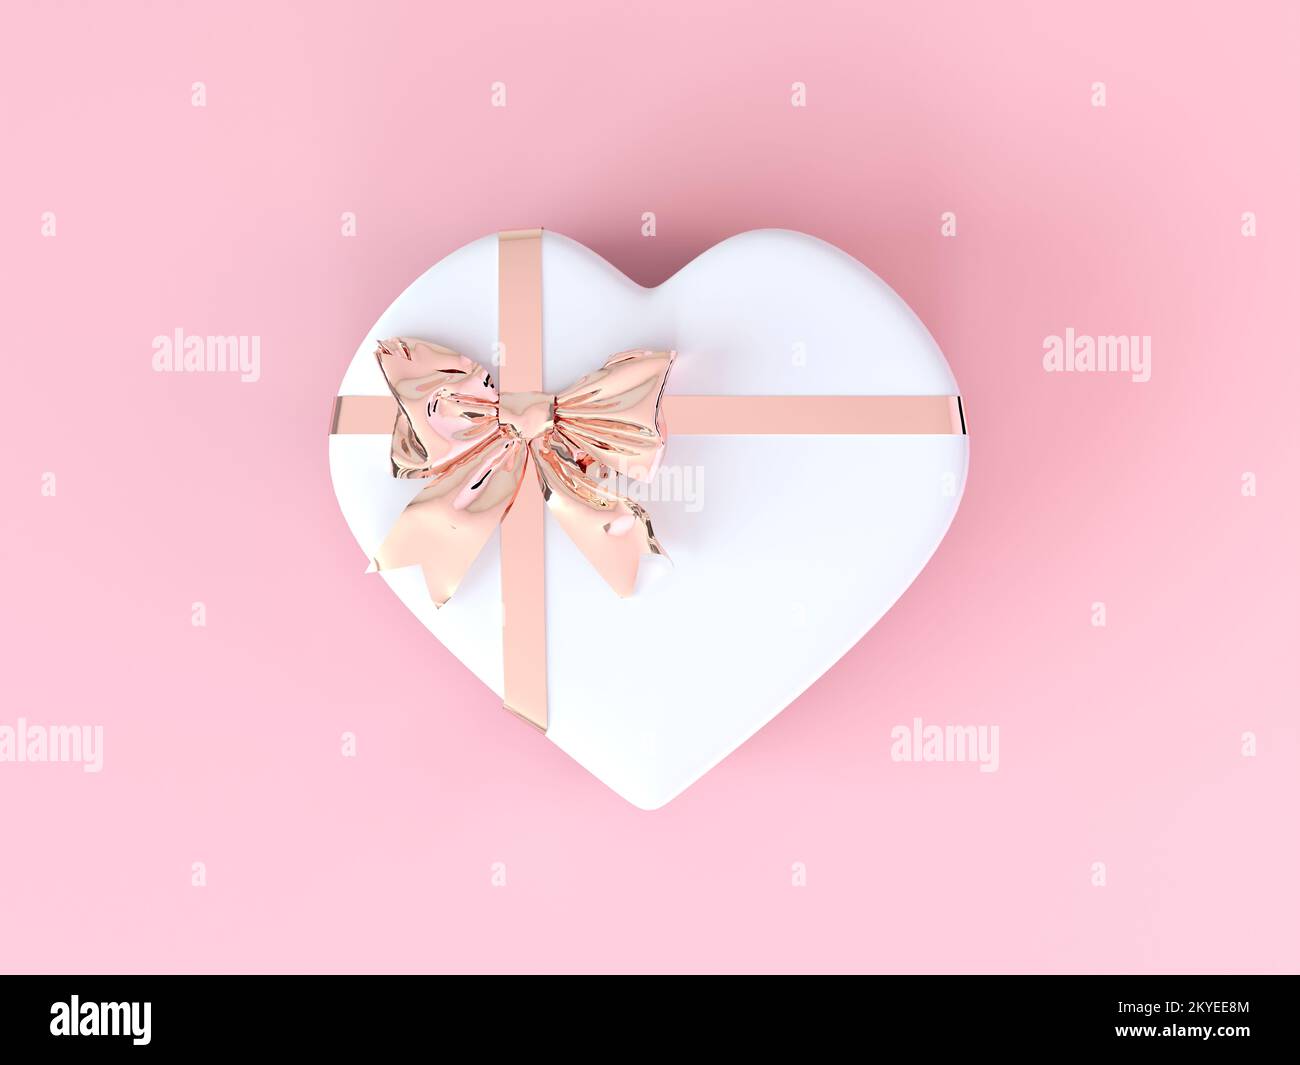 Fiocco metallico-nastro rosa cuore scatola regalo San Valentino concetto. Sfondo rosa pastello chiaro. Matrimonio, compleanno, Festa della donna, Festa della mamma, San Valentino Foto Stock